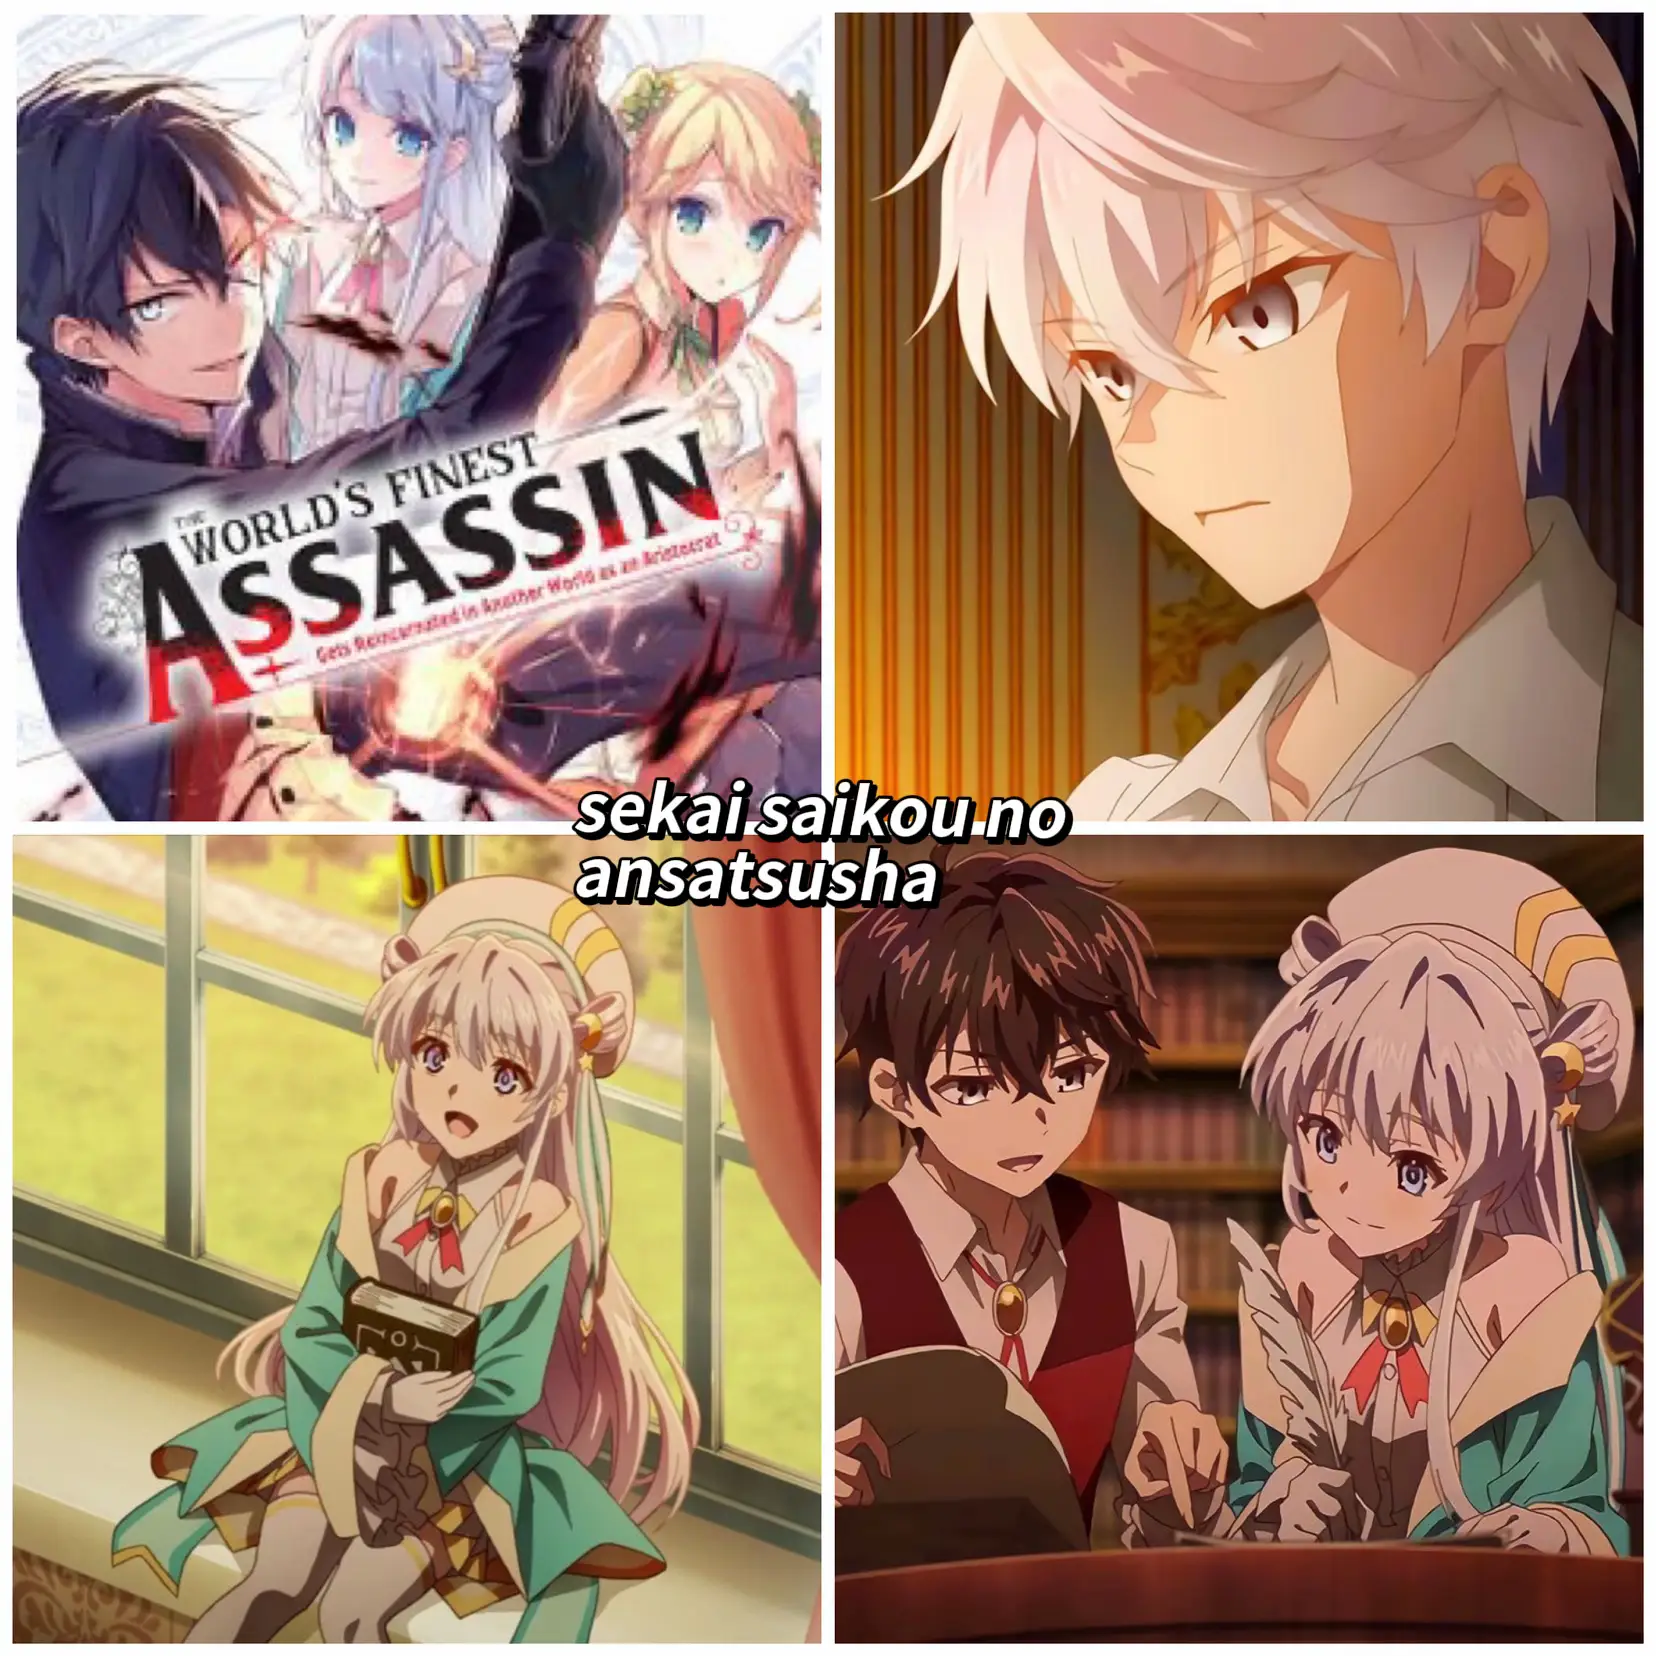 Sekai Saikou no Ansatsusha  Anime films, Aesthetic anime, Anime